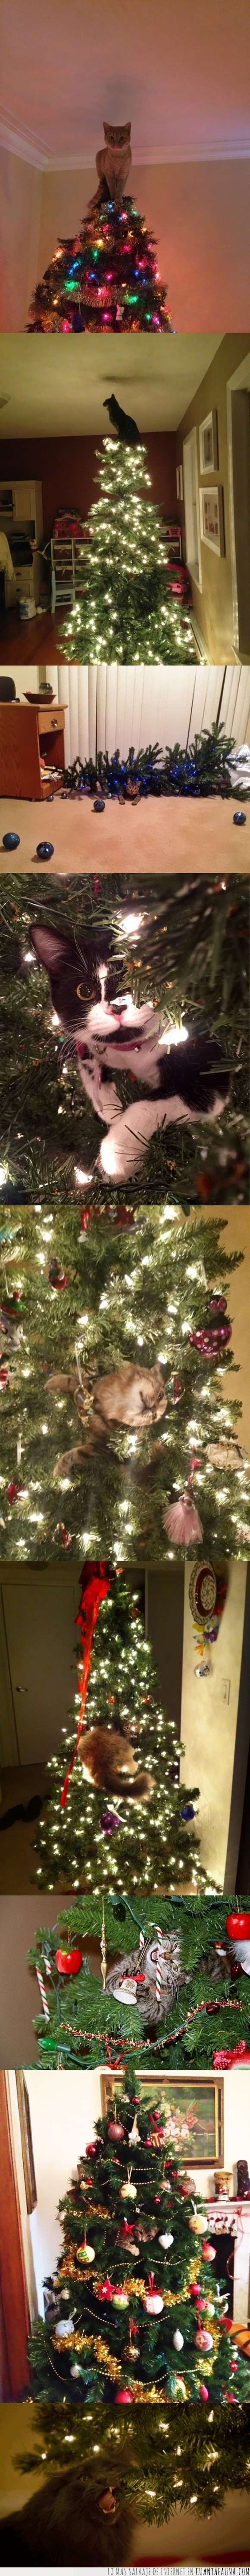 árboles de navidad,gatos,navidad